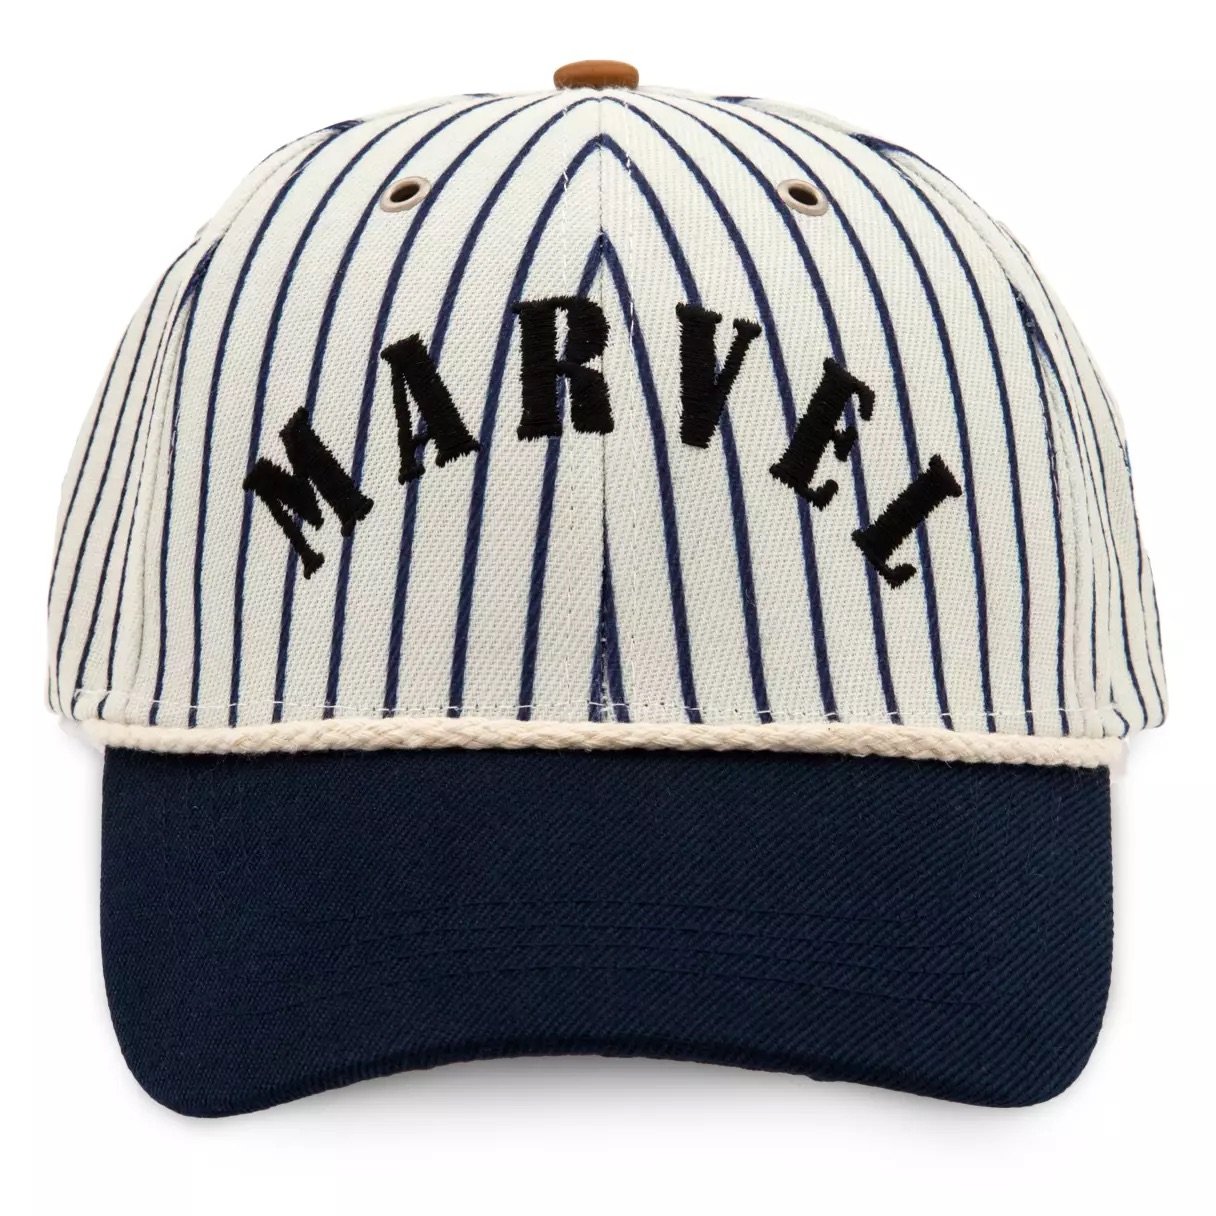 Marvel Striped Baseball Cap